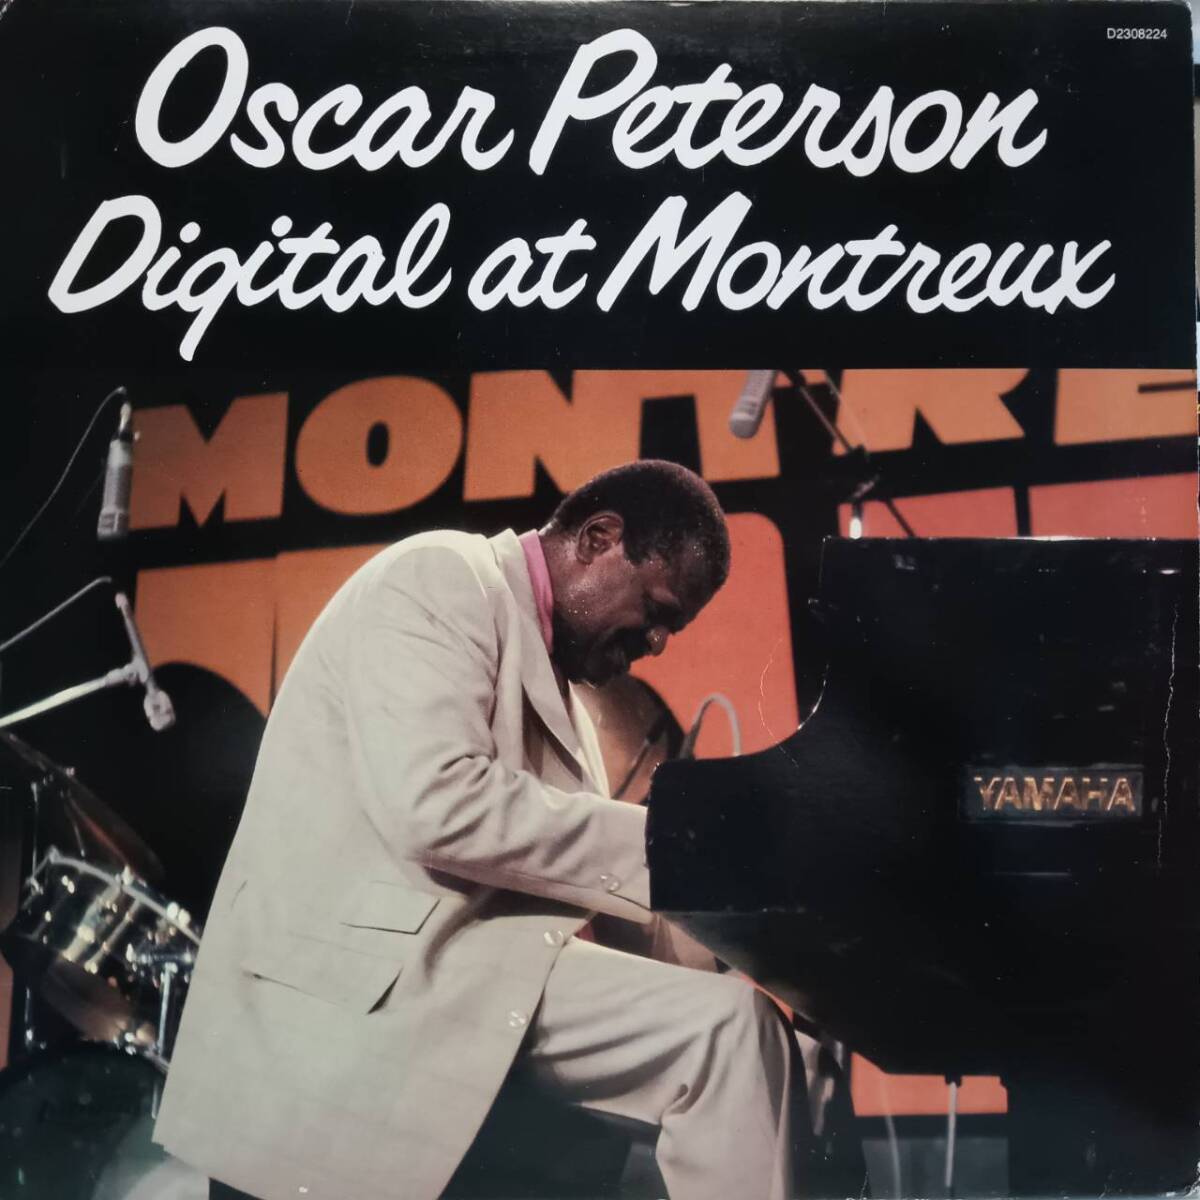 赤盤 米PABLOオリジLP 高音質デジタル録音 Oscar Peterson / Digital At Montreux 1980年 D2308224 オスカー・ピーターソン Red Color_画像2